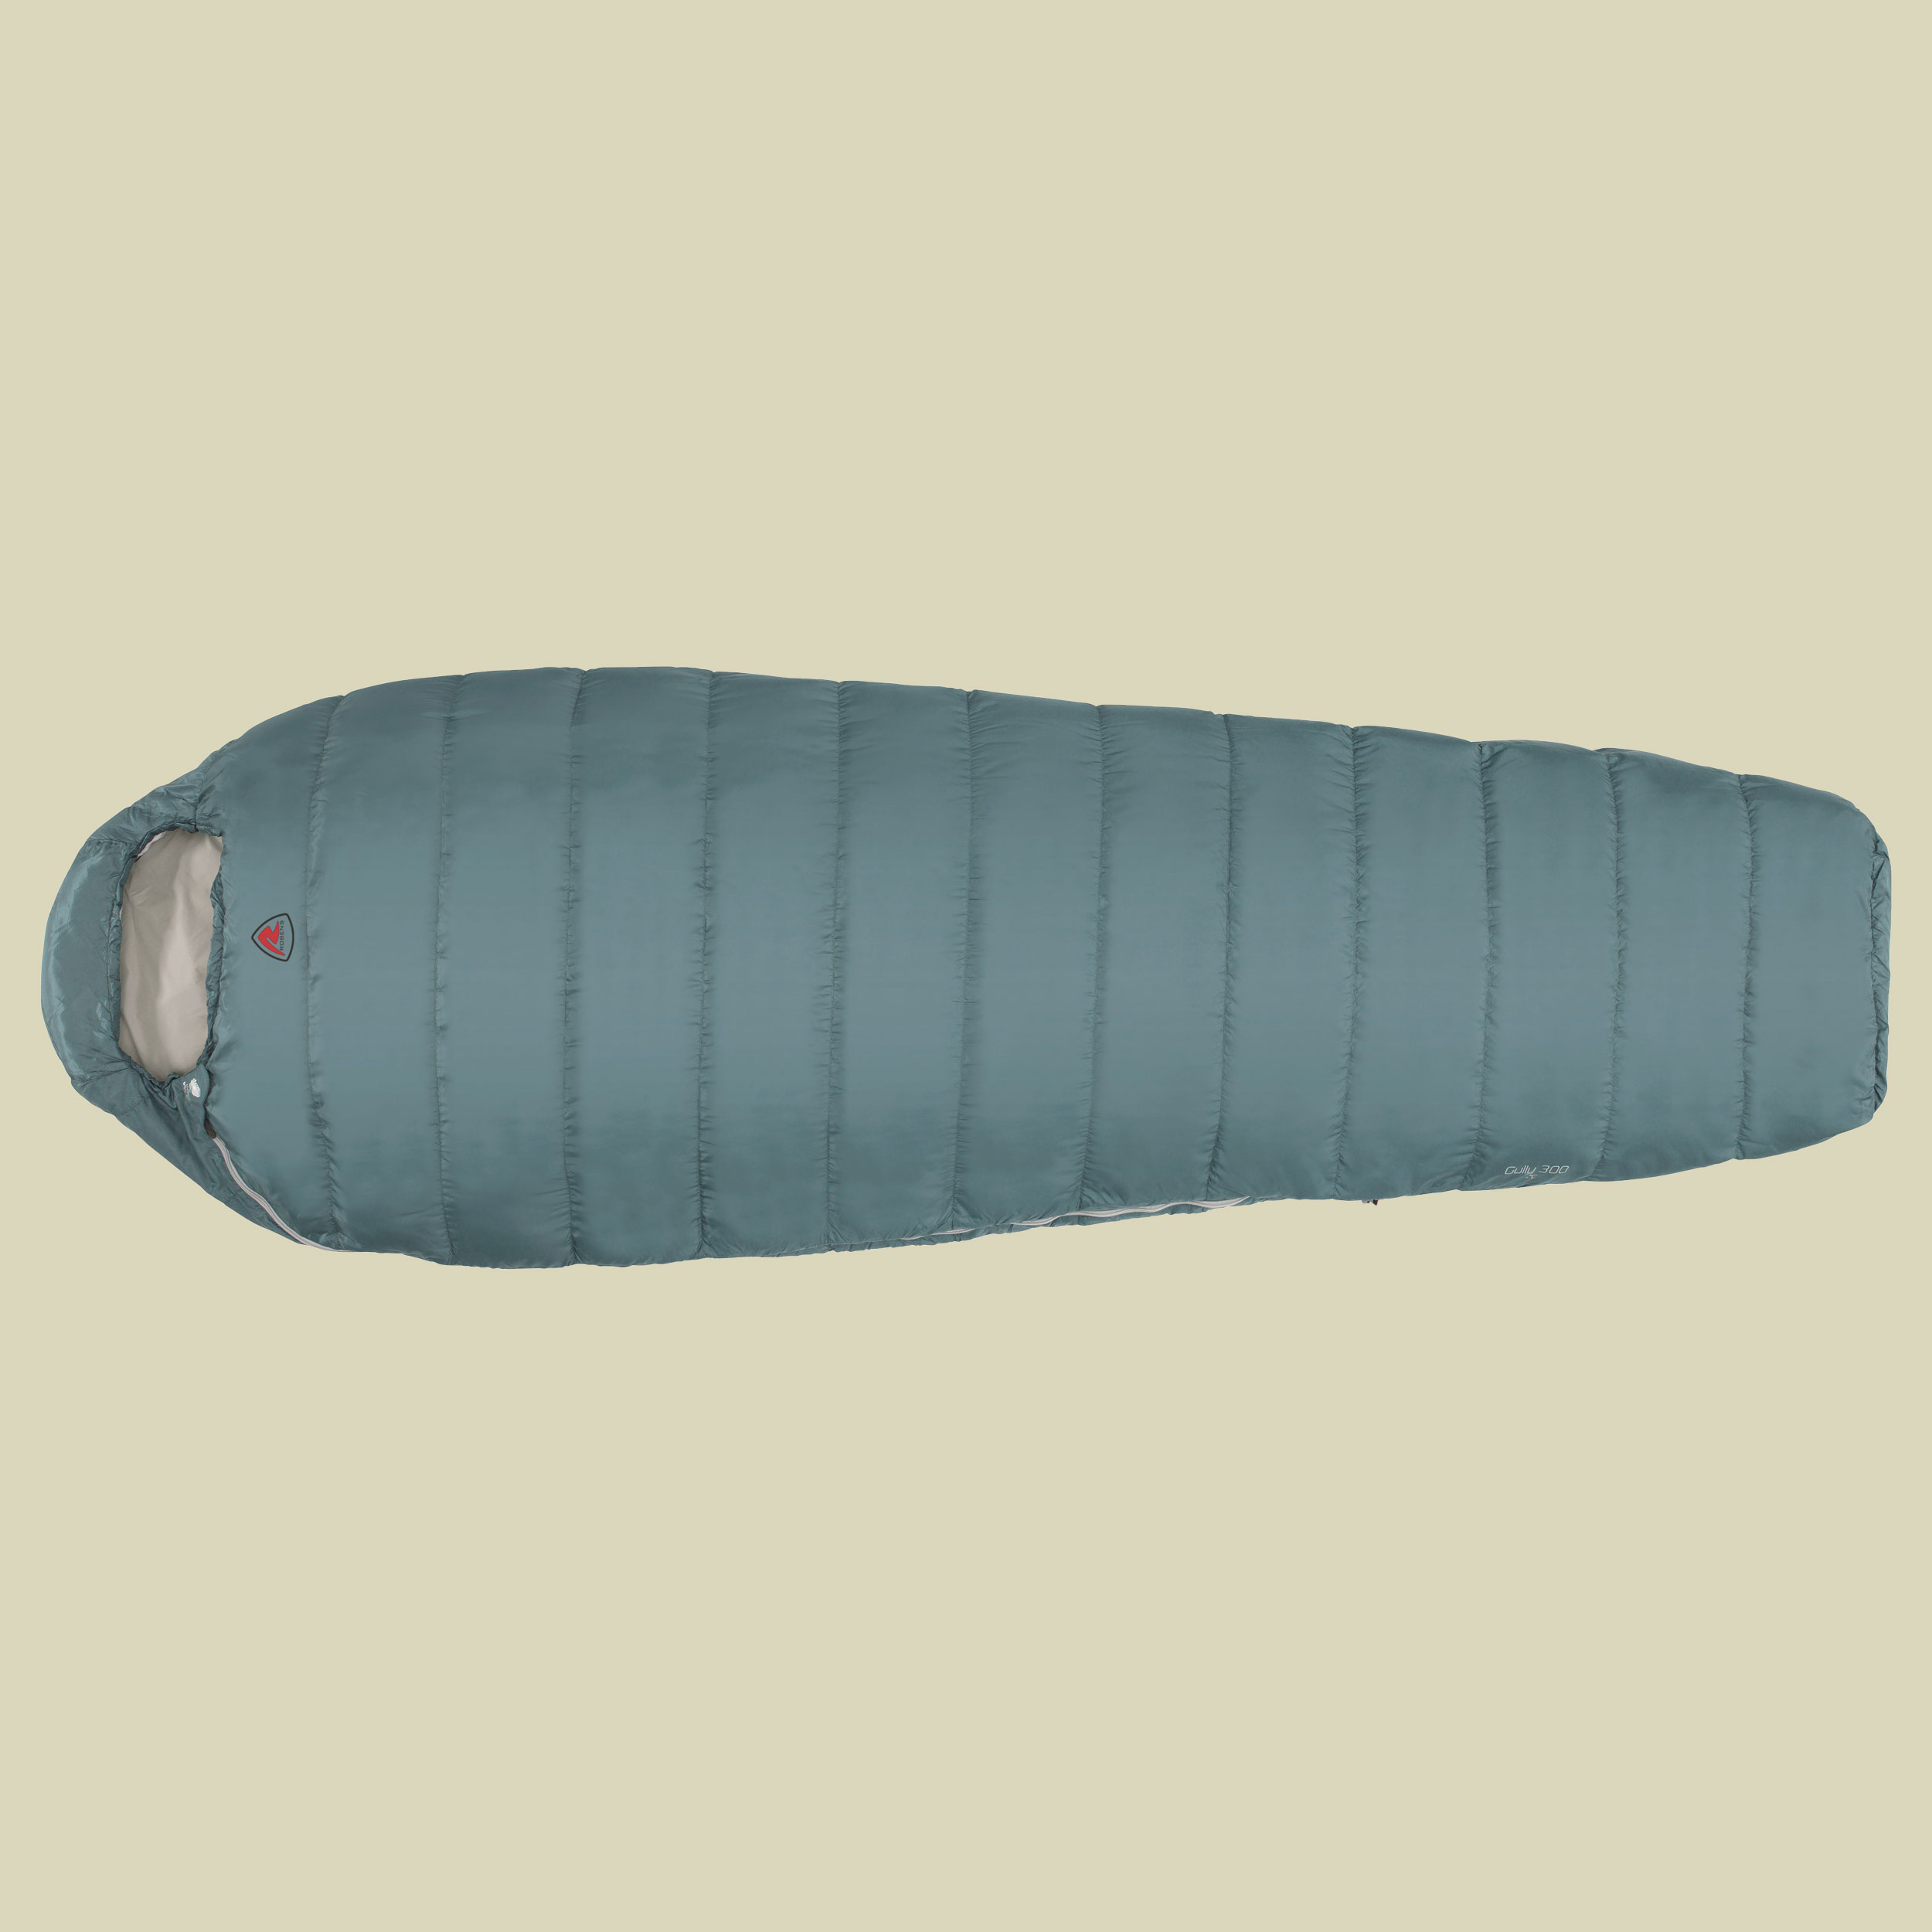 Gully 300 "R" bis Körpergröße: 195 cm Farbe: ocean blue; Reißverschluss rechts